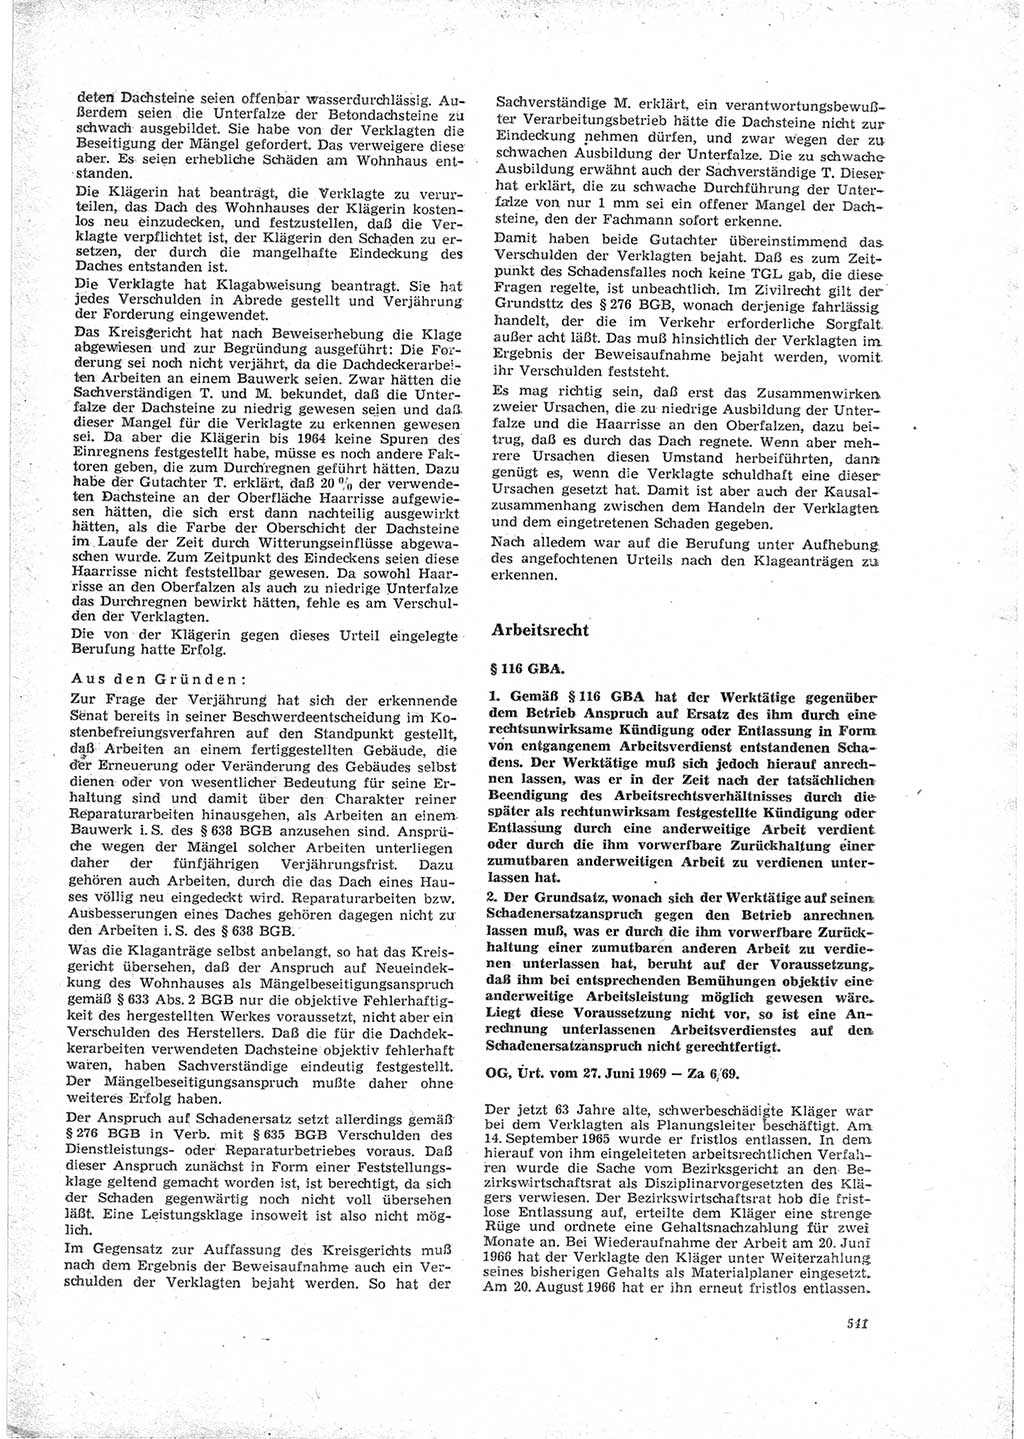 Neue Justiz (NJ), Zeitschrift für Recht und Rechtswissenschaft [Deutsche Demokratische Republik (DDR)], 23. Jahrgang 1969, Seite 541 (NJ DDR 1969, S. 541)